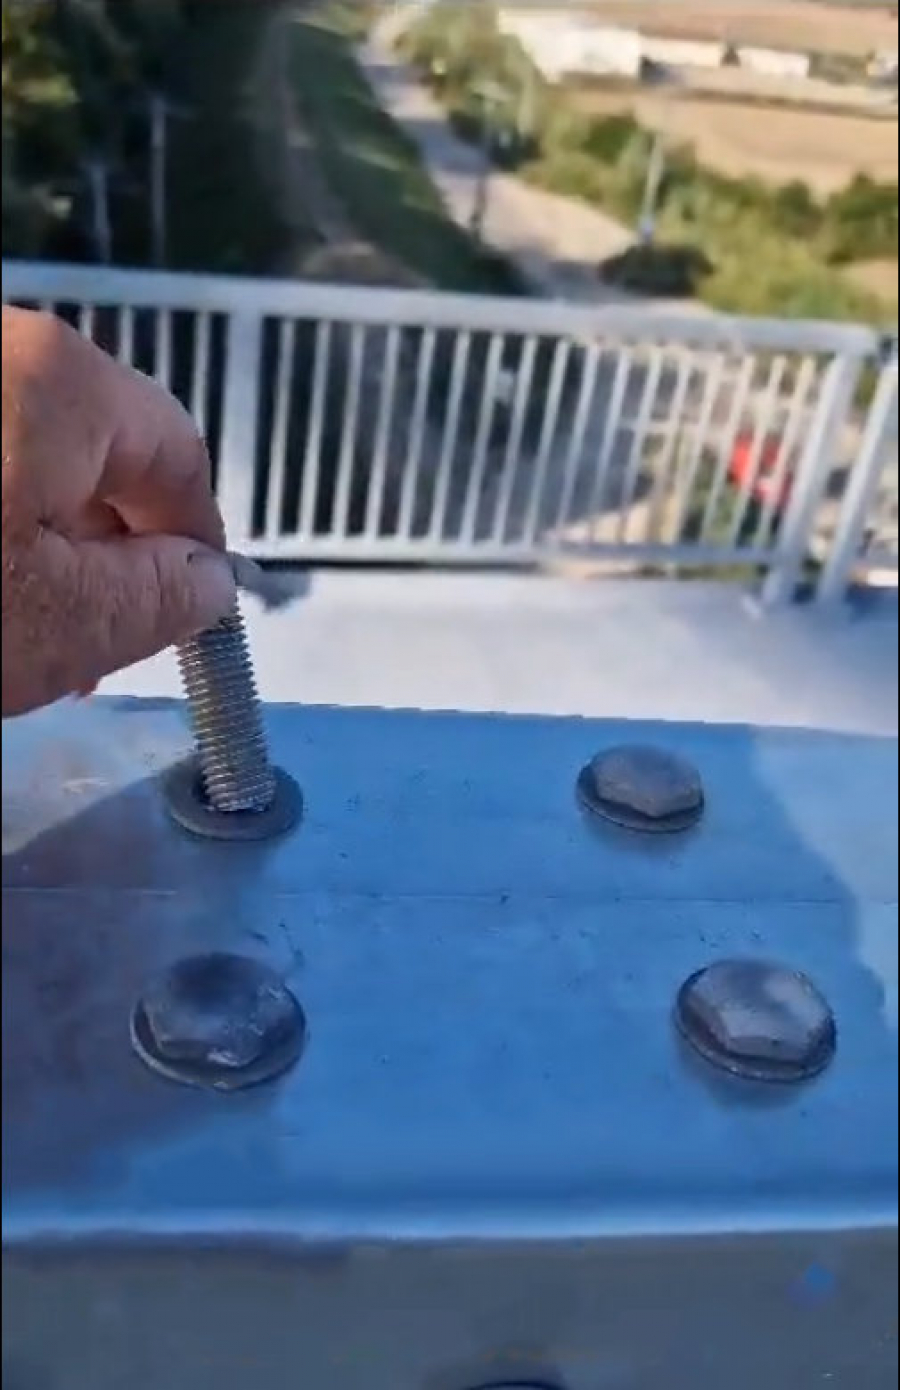 Şuruburi scoase cu mâna pe podul de la Brăila. Reacția CNAIR: "Este jenant pentru un așa constructor" (VIDEO)